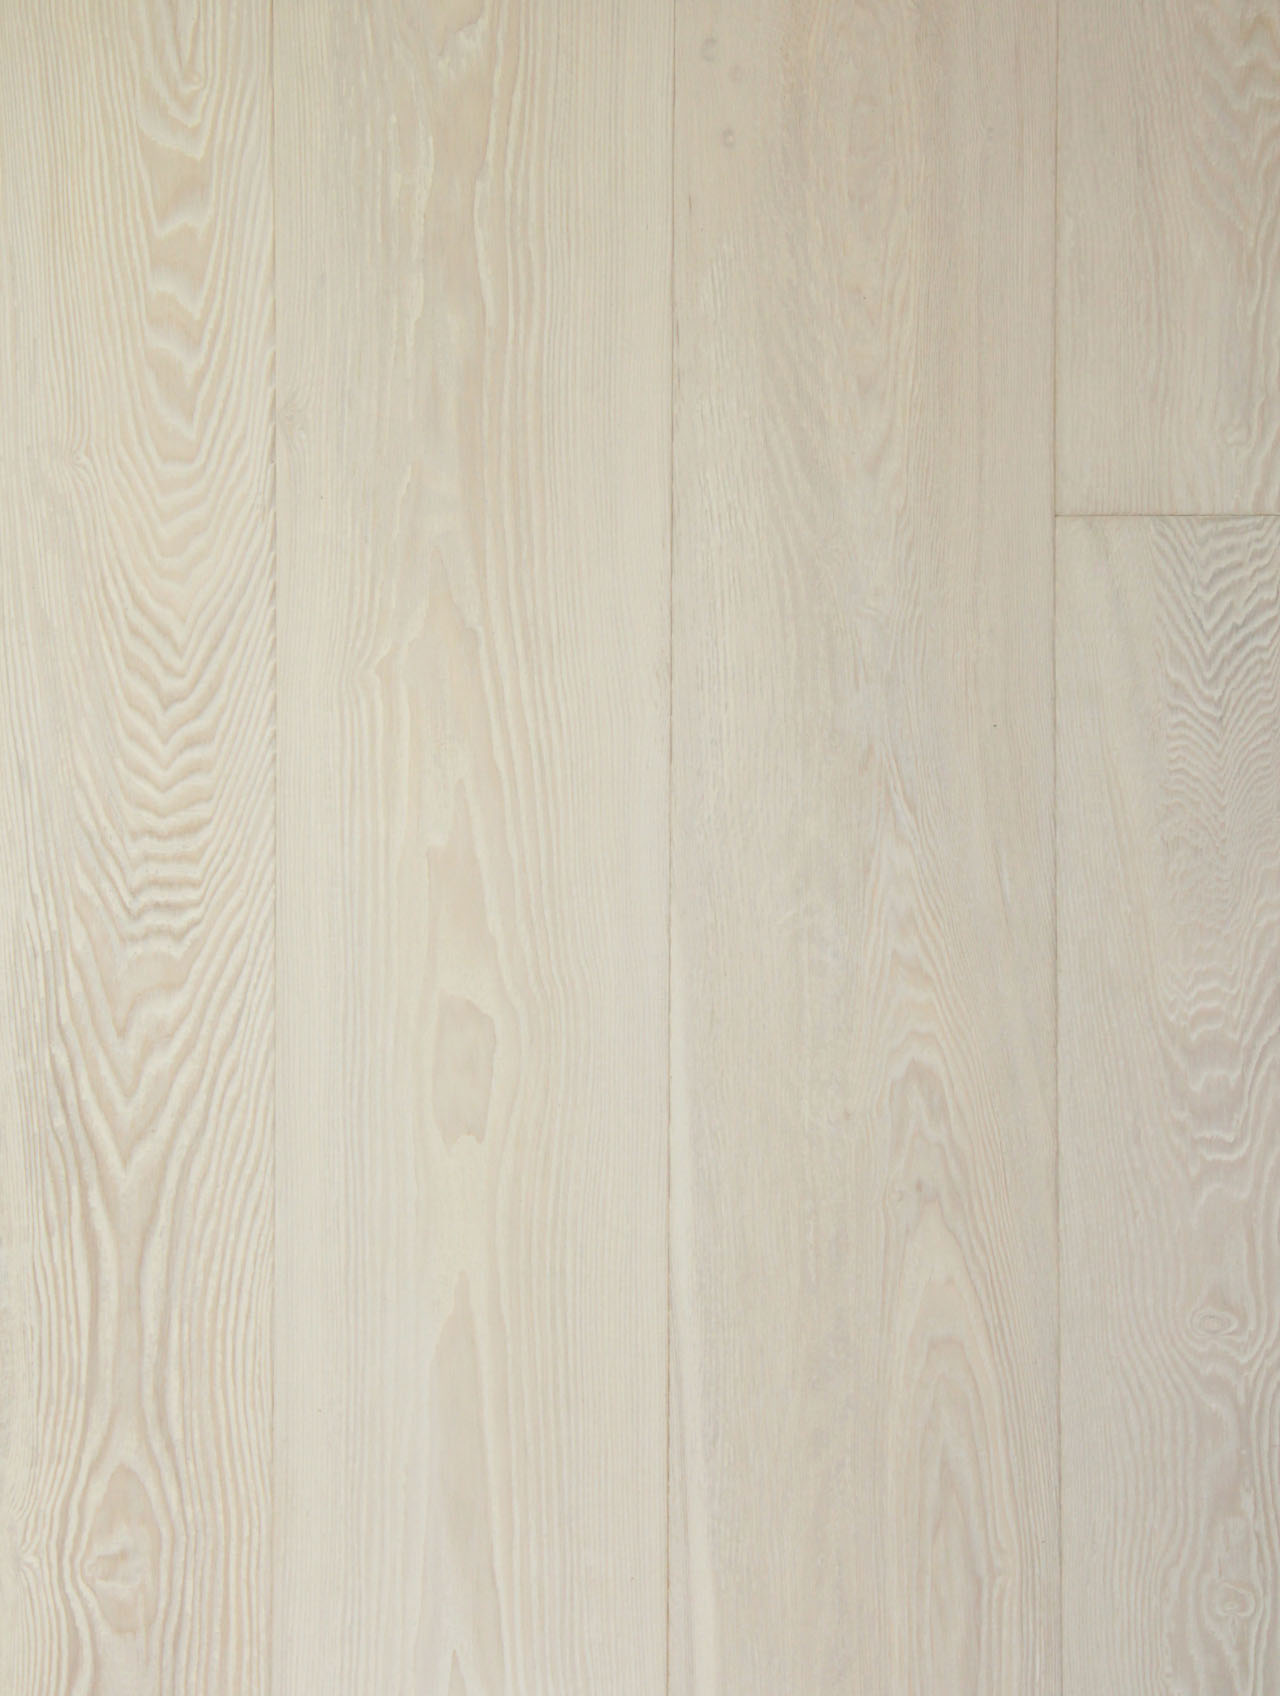 Ash-Ivory-White-Engineered-Hardwood-Flooring-TG9102